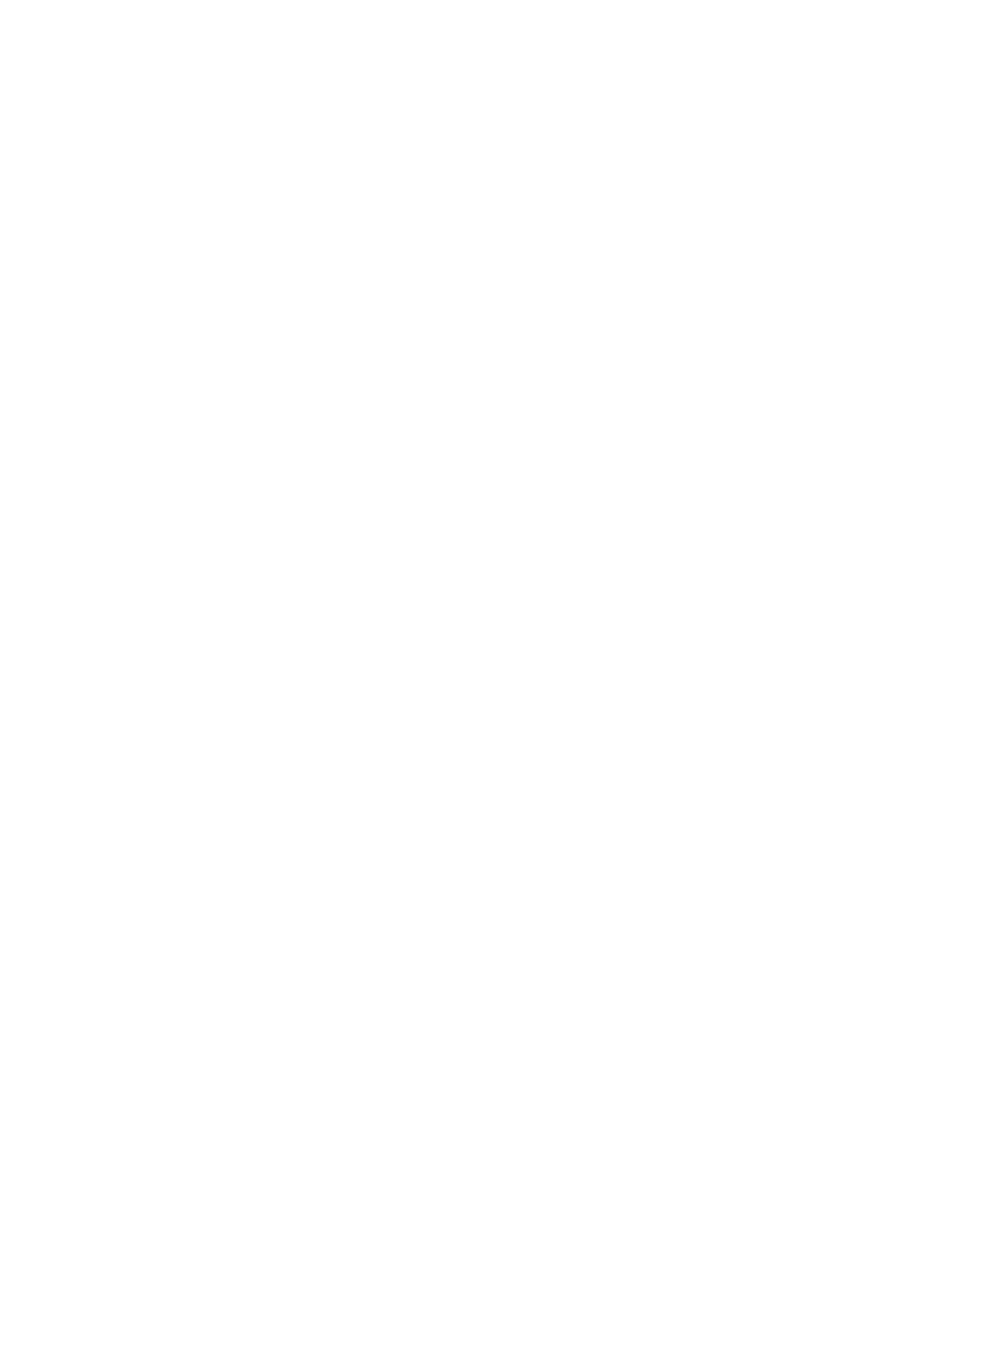 biểu trưng của Whitehorse City Council